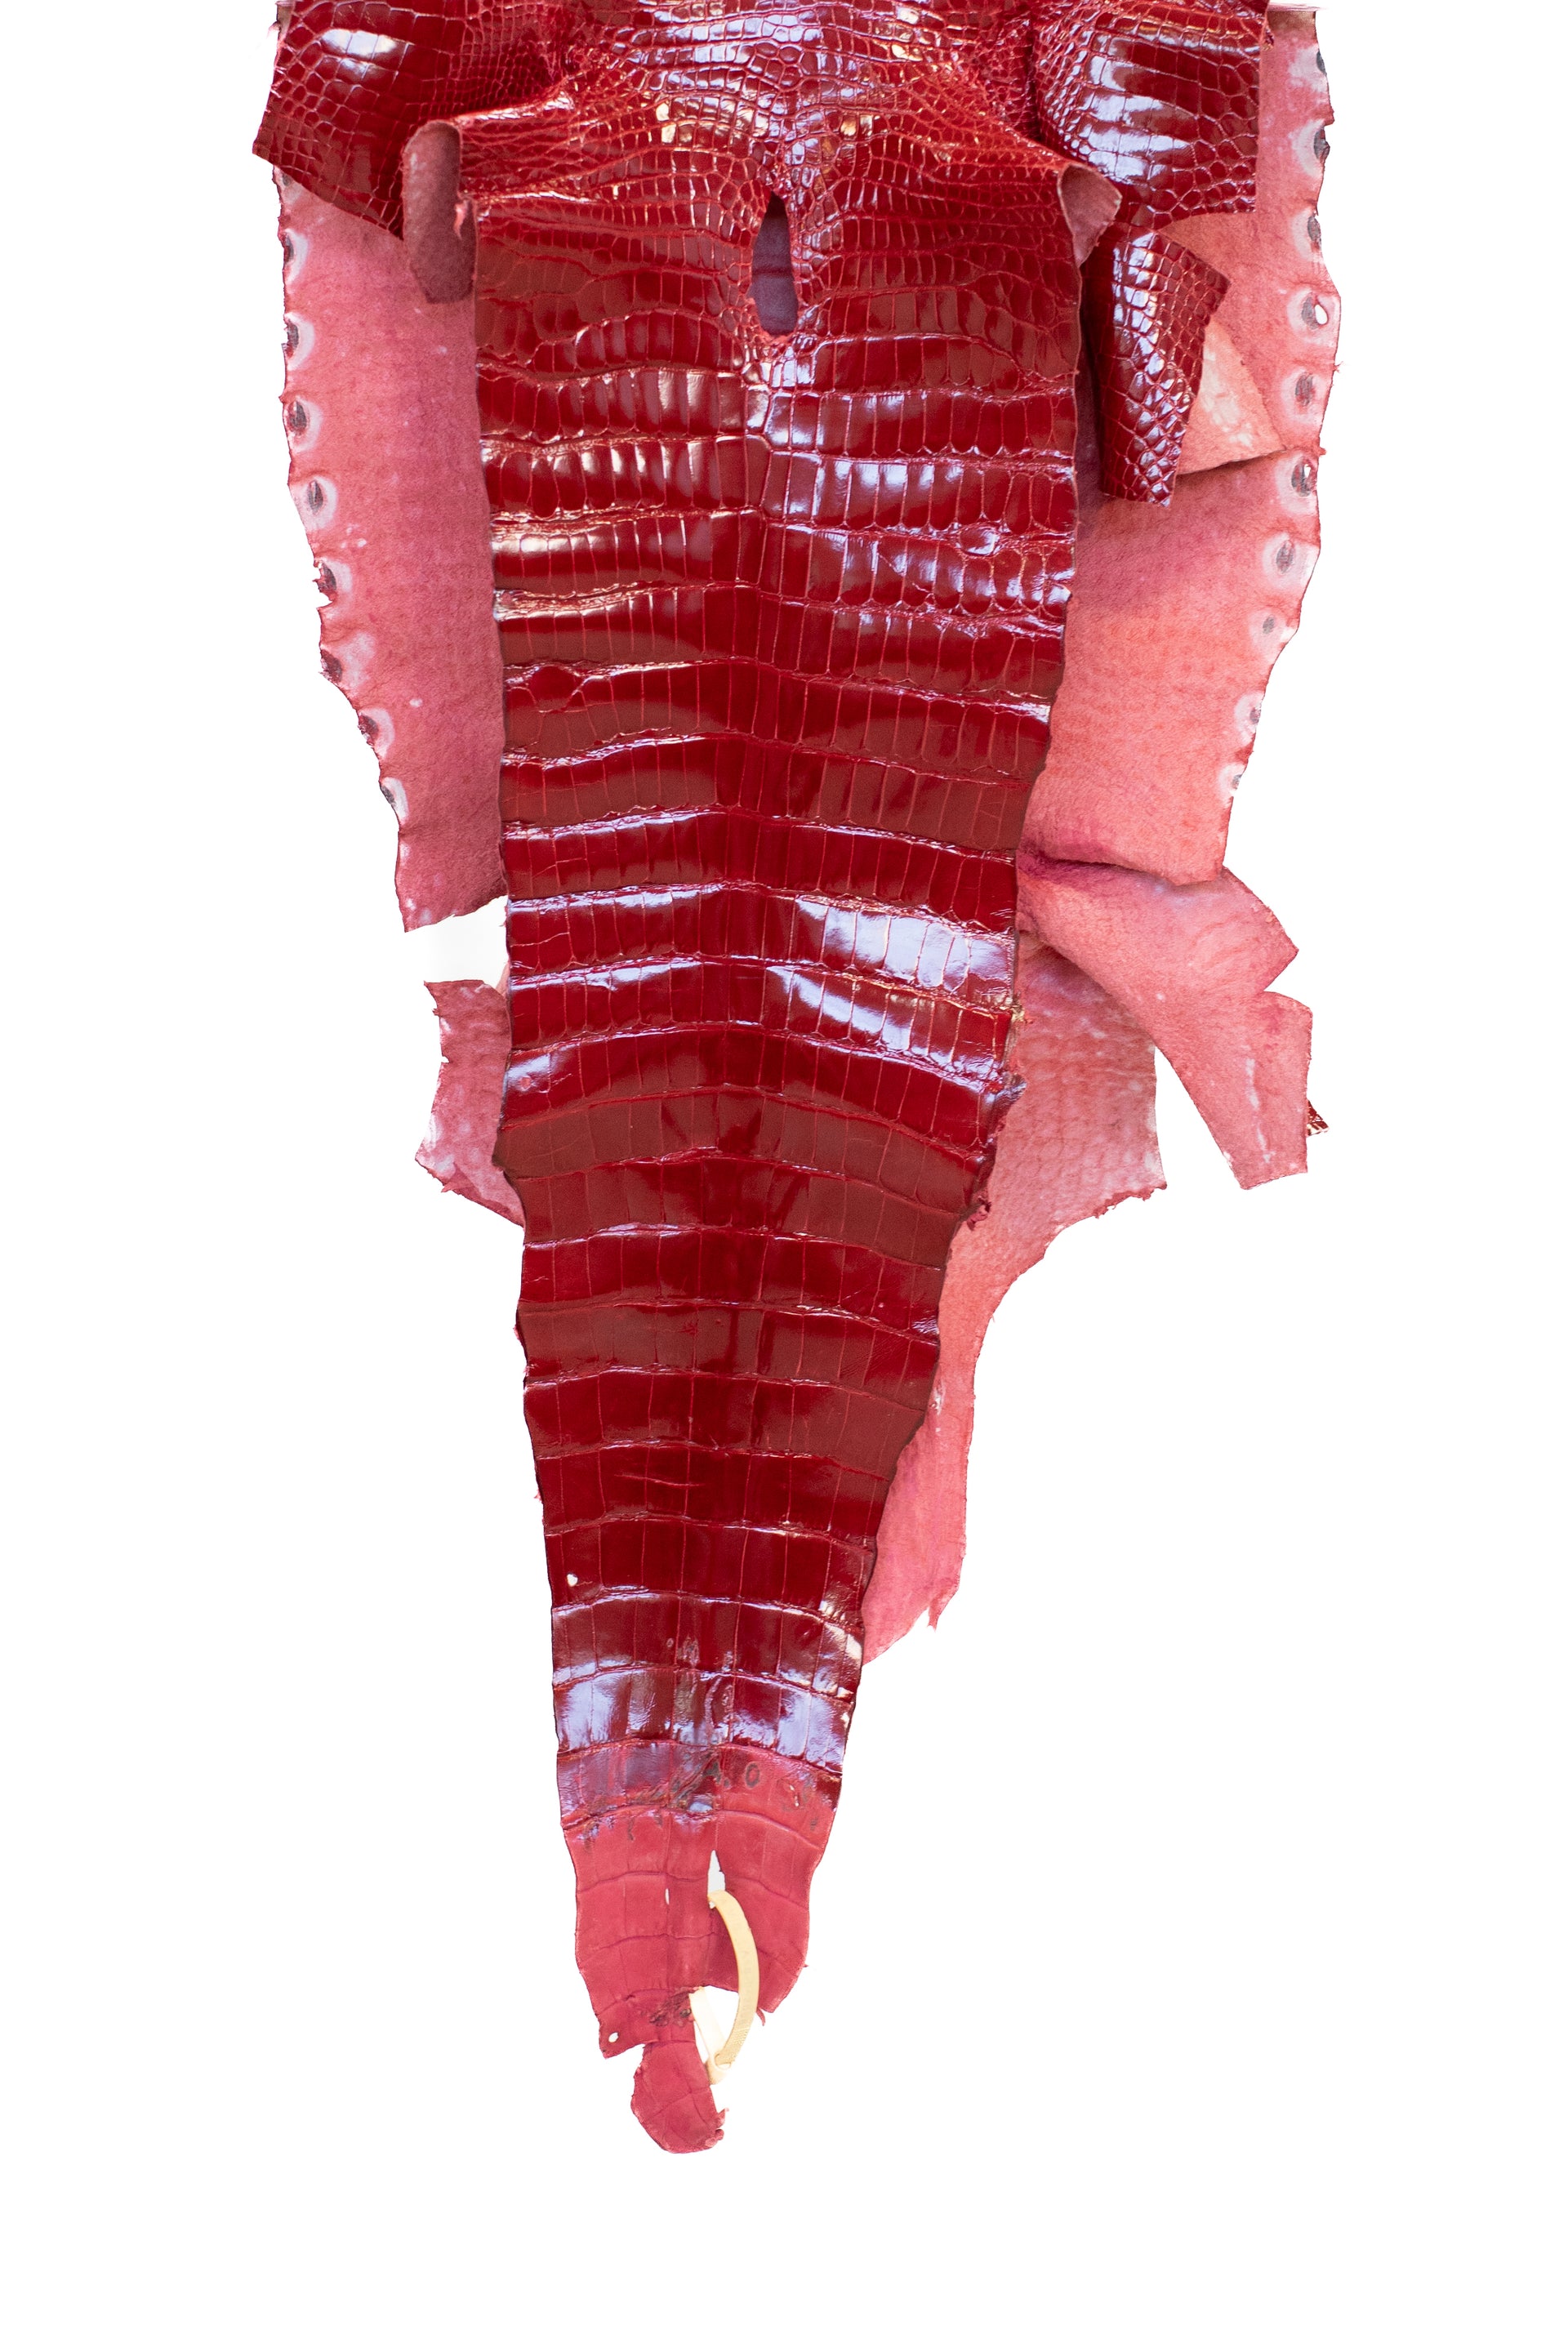 40 cm Grade 2/3 Red Glazed Wild American Alligator Leather - Tag: LA16-0043658